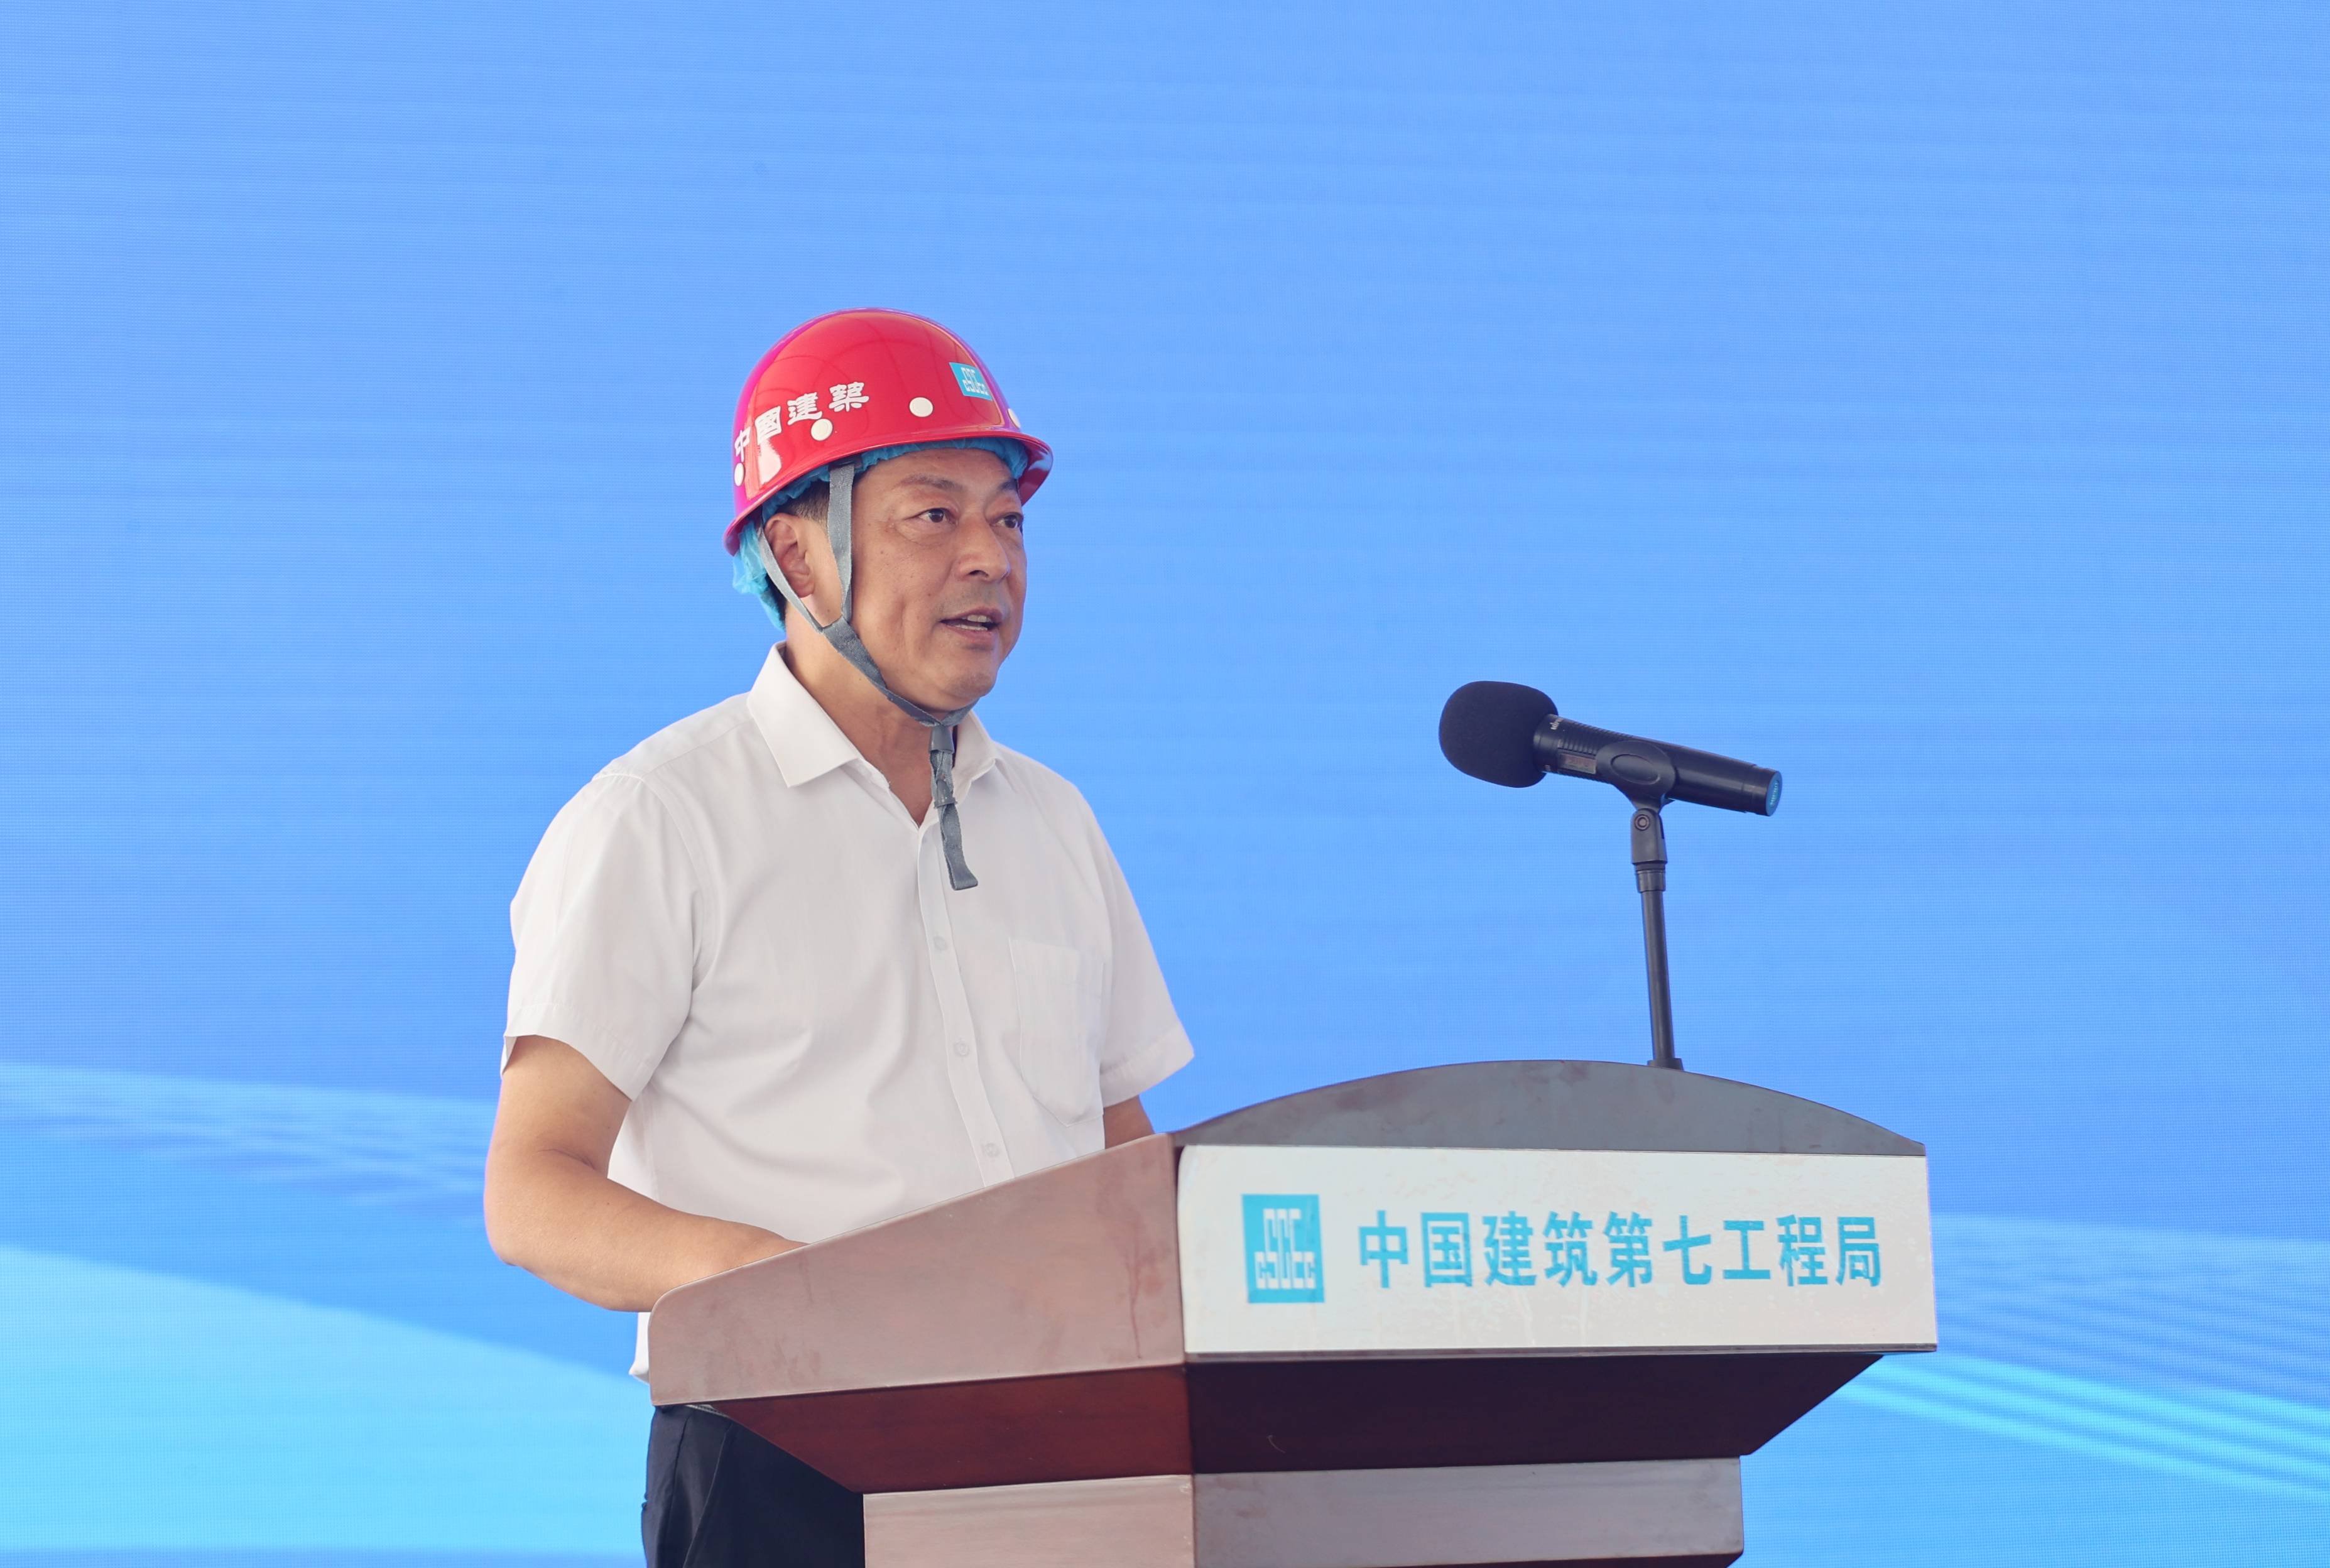 中建七局副总经理李俊杰李俊杰在讲话中指出,今年是全面贯彻党的二十